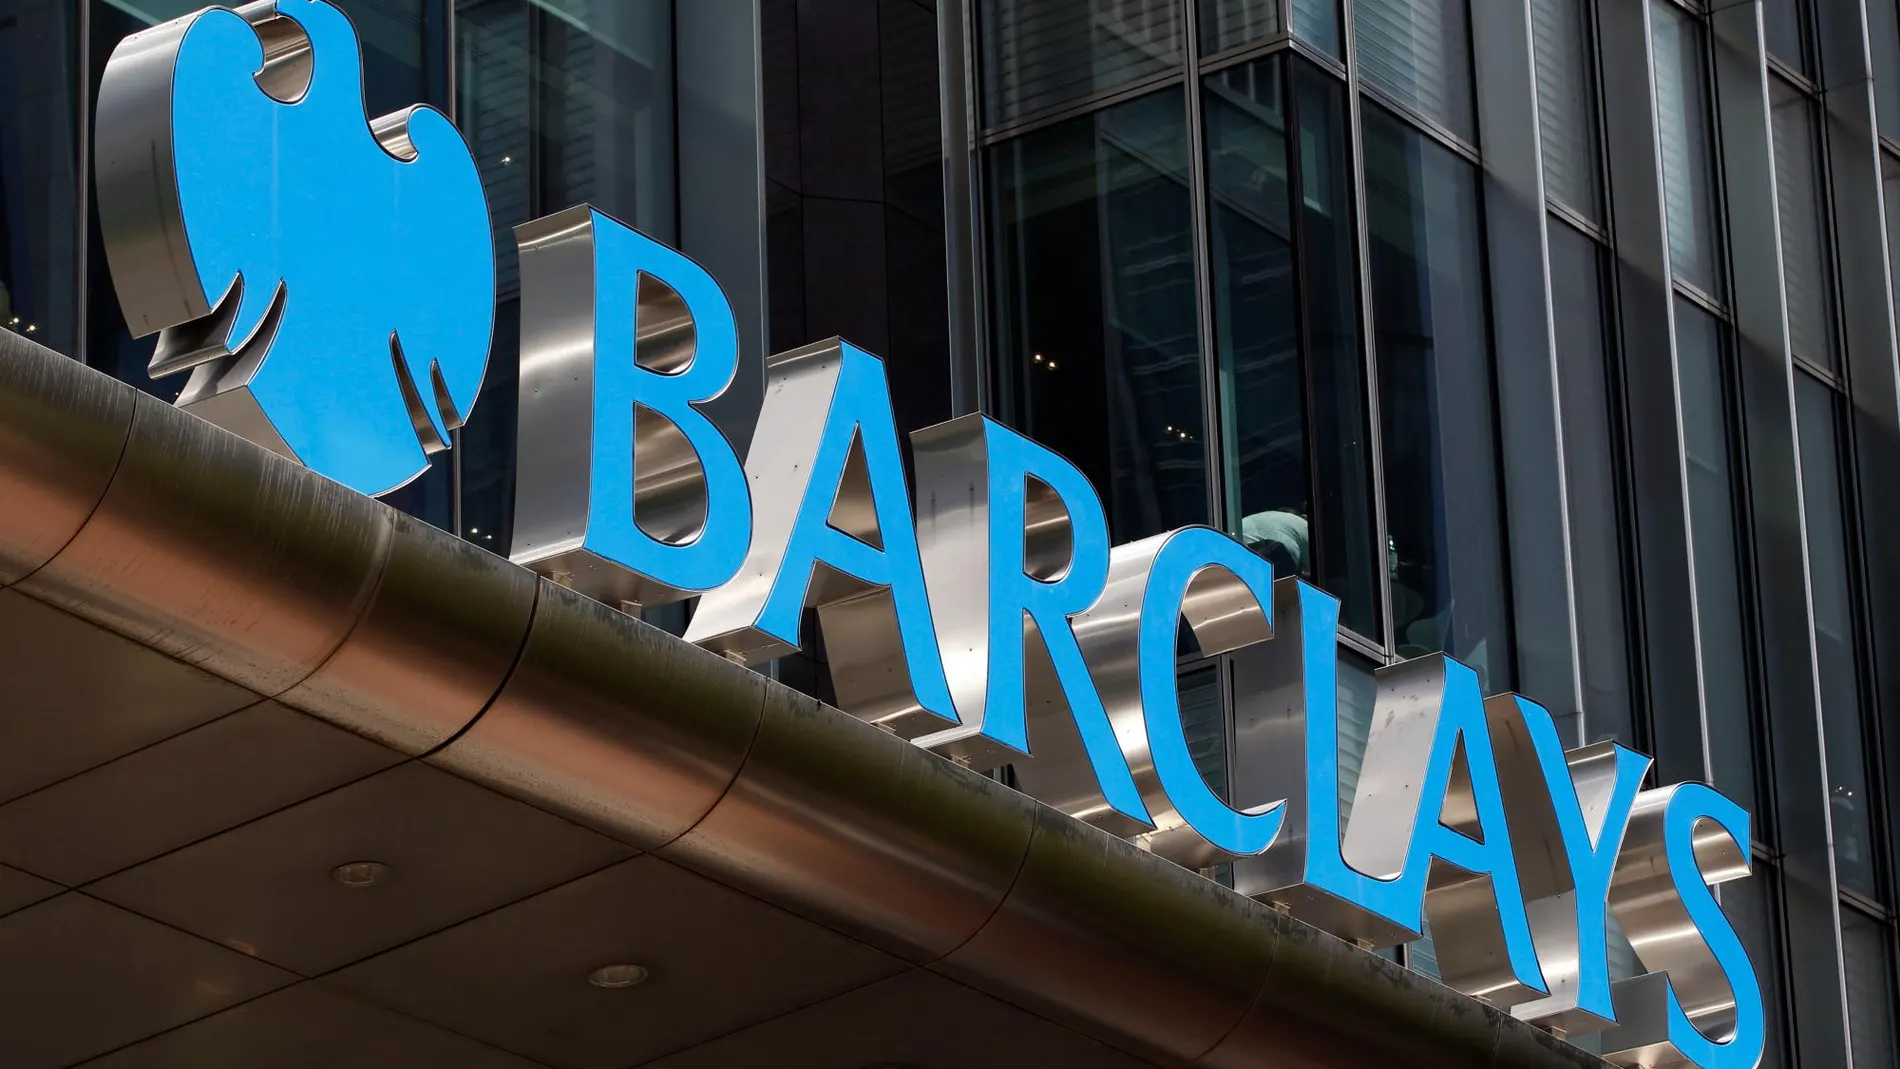 La cifra de negocio de Barclays en 2018 alcanzó los 21.136 millones de libras (24.328 millones de euros), un 0,3% más que un año antes,